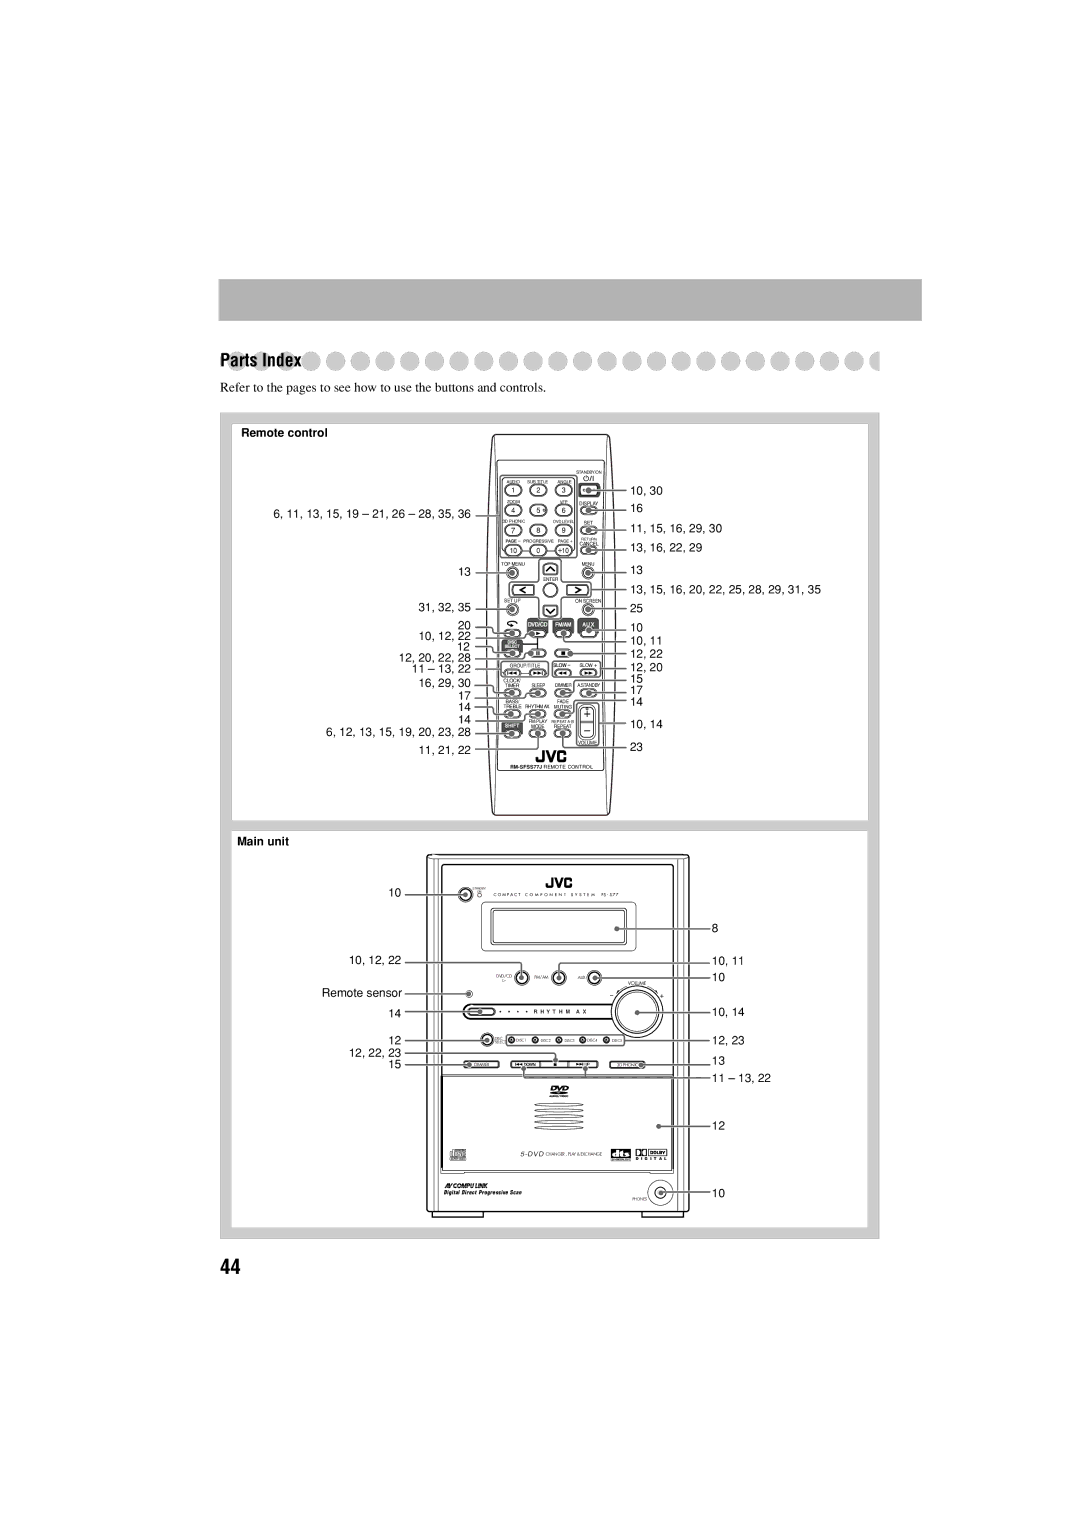 JVC FS-S77B/FS-S77S manual Parts Index, 12, 22 